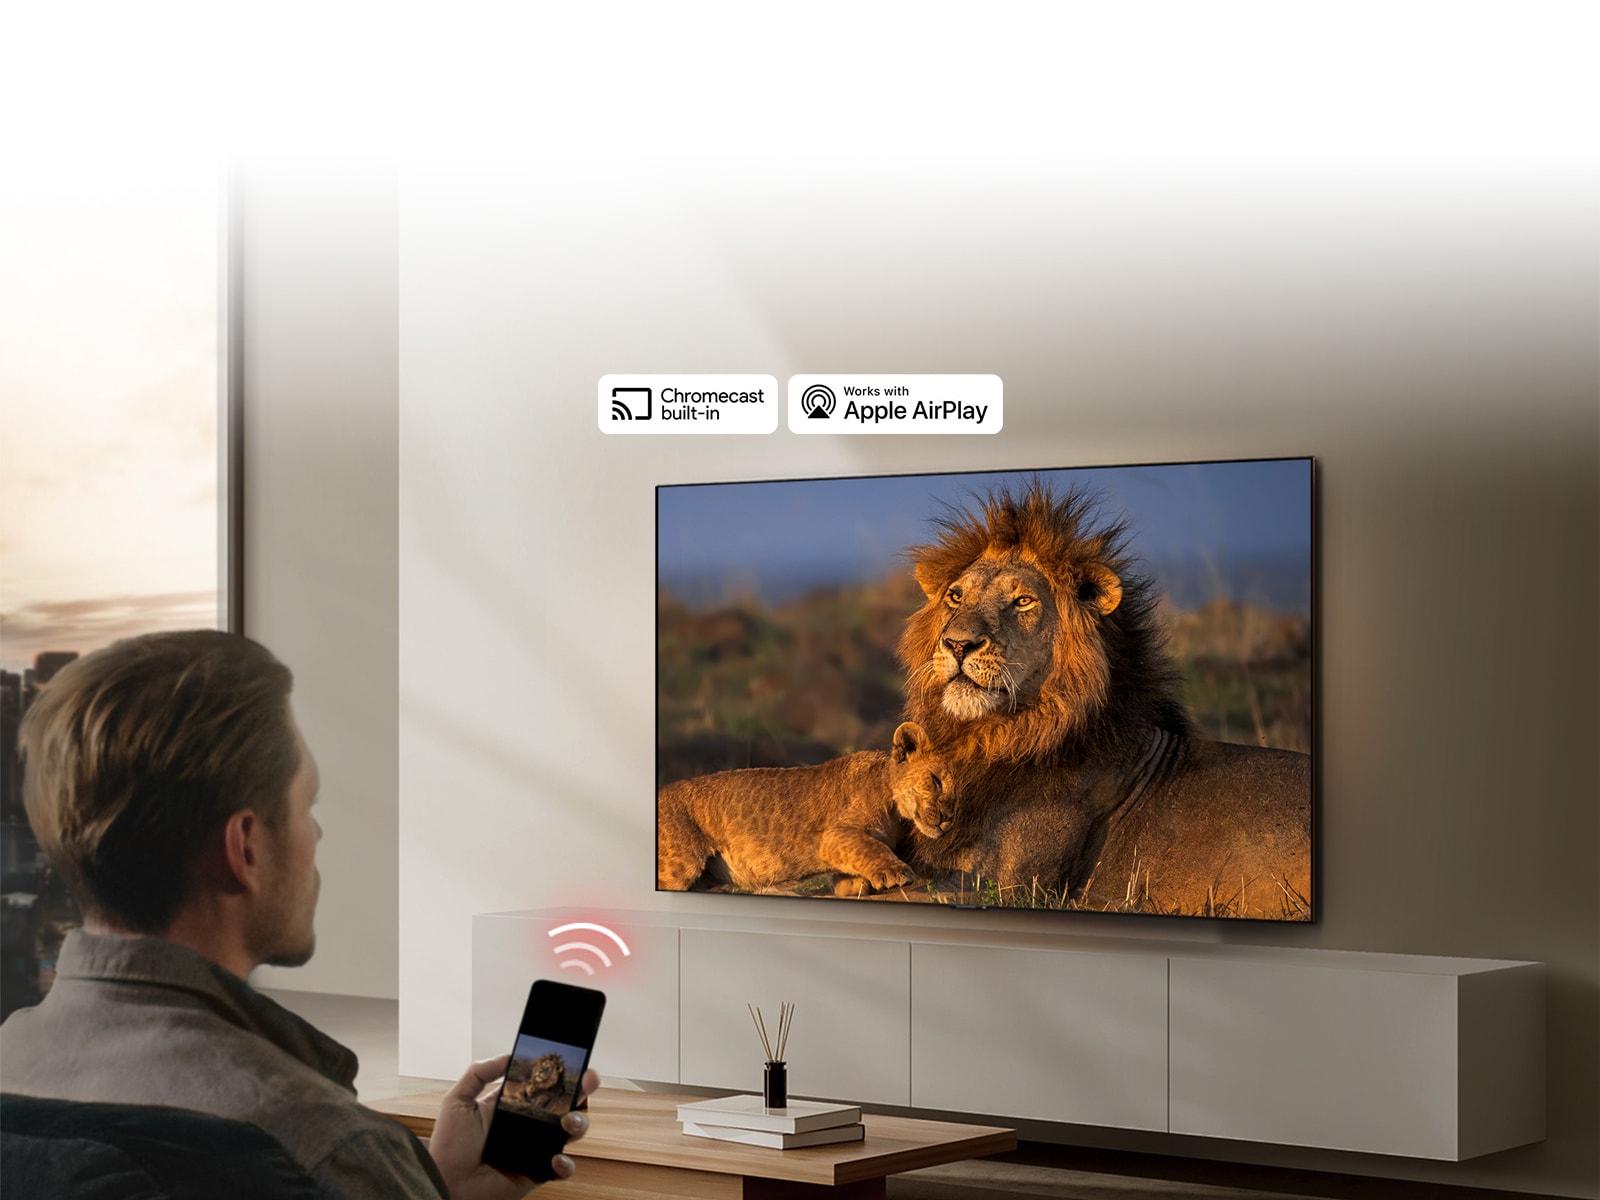 یک LG TV روی دیوار اتاق پذیرایی نصب شده و یک شیر و توله شیر را نشان می‌دهد. مردی در پیش‌زمینه نشسته و یک گوشی هوشمند در دستش دارد که همان تصویر شیرها را نشان می‌دهد. گرافیک سه میله منحنی قرمز نئون درست در بالای گوشی هوشمندی دیده می‌شود که به تلویزیون اشاره دارد.